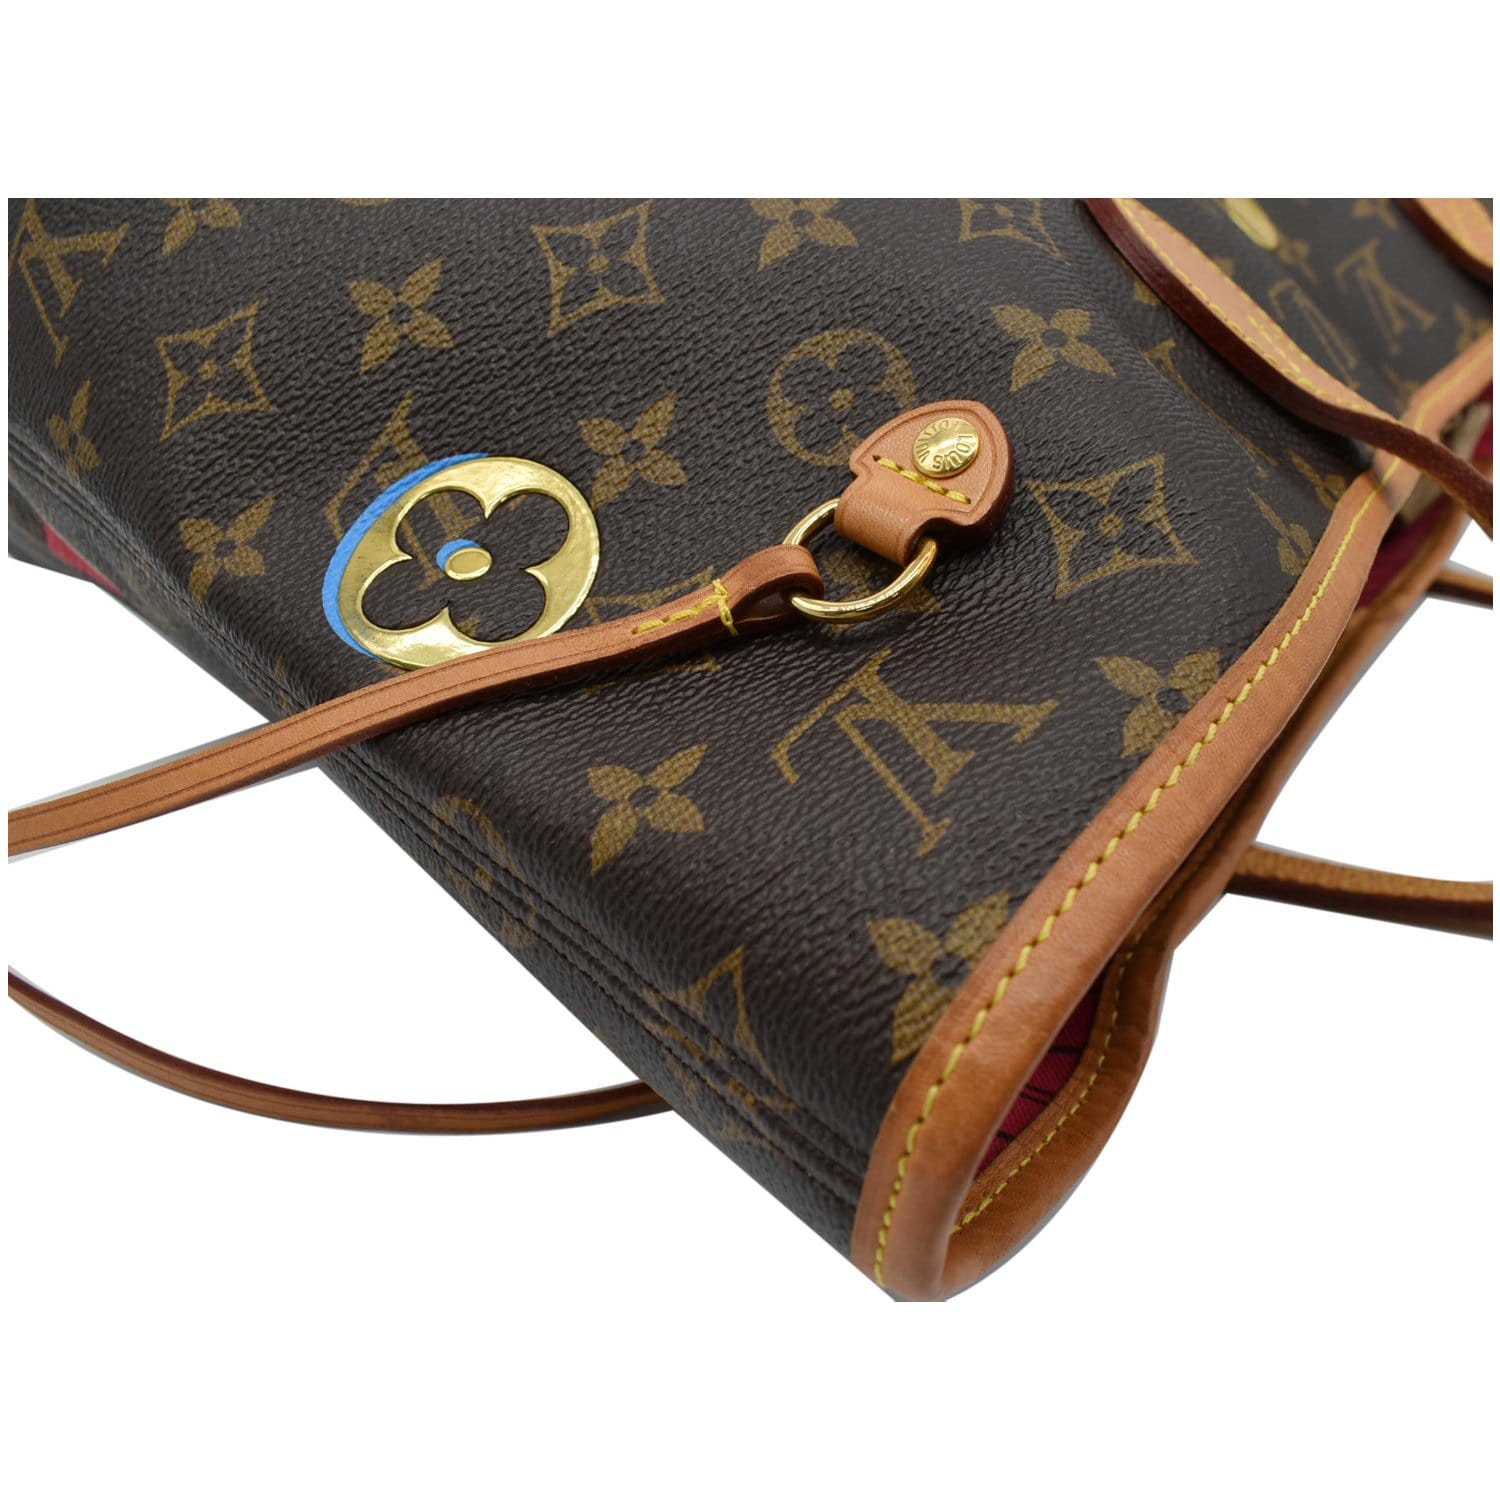 Neverfull MM Lovelock w/Wallet – Keeks Designer Handbags